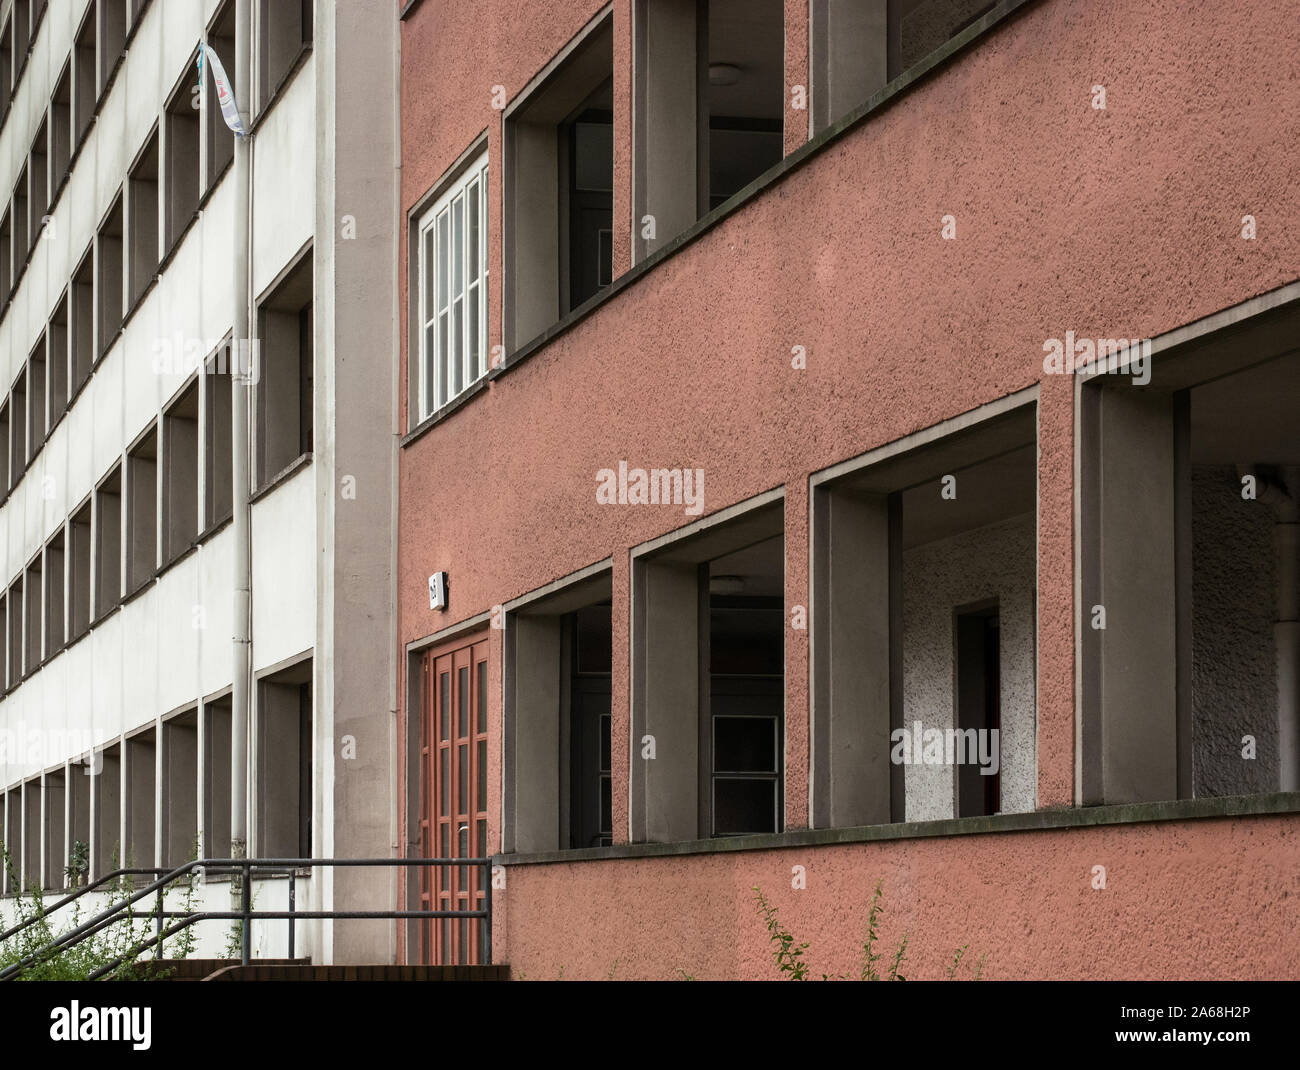 Alte sozialistische Architektur von Pergola House (laubenganghaus) in Friedrichshain, Berlin, Deutschland, lange Korridore die Apartments außerhalb anschließen Stockfoto